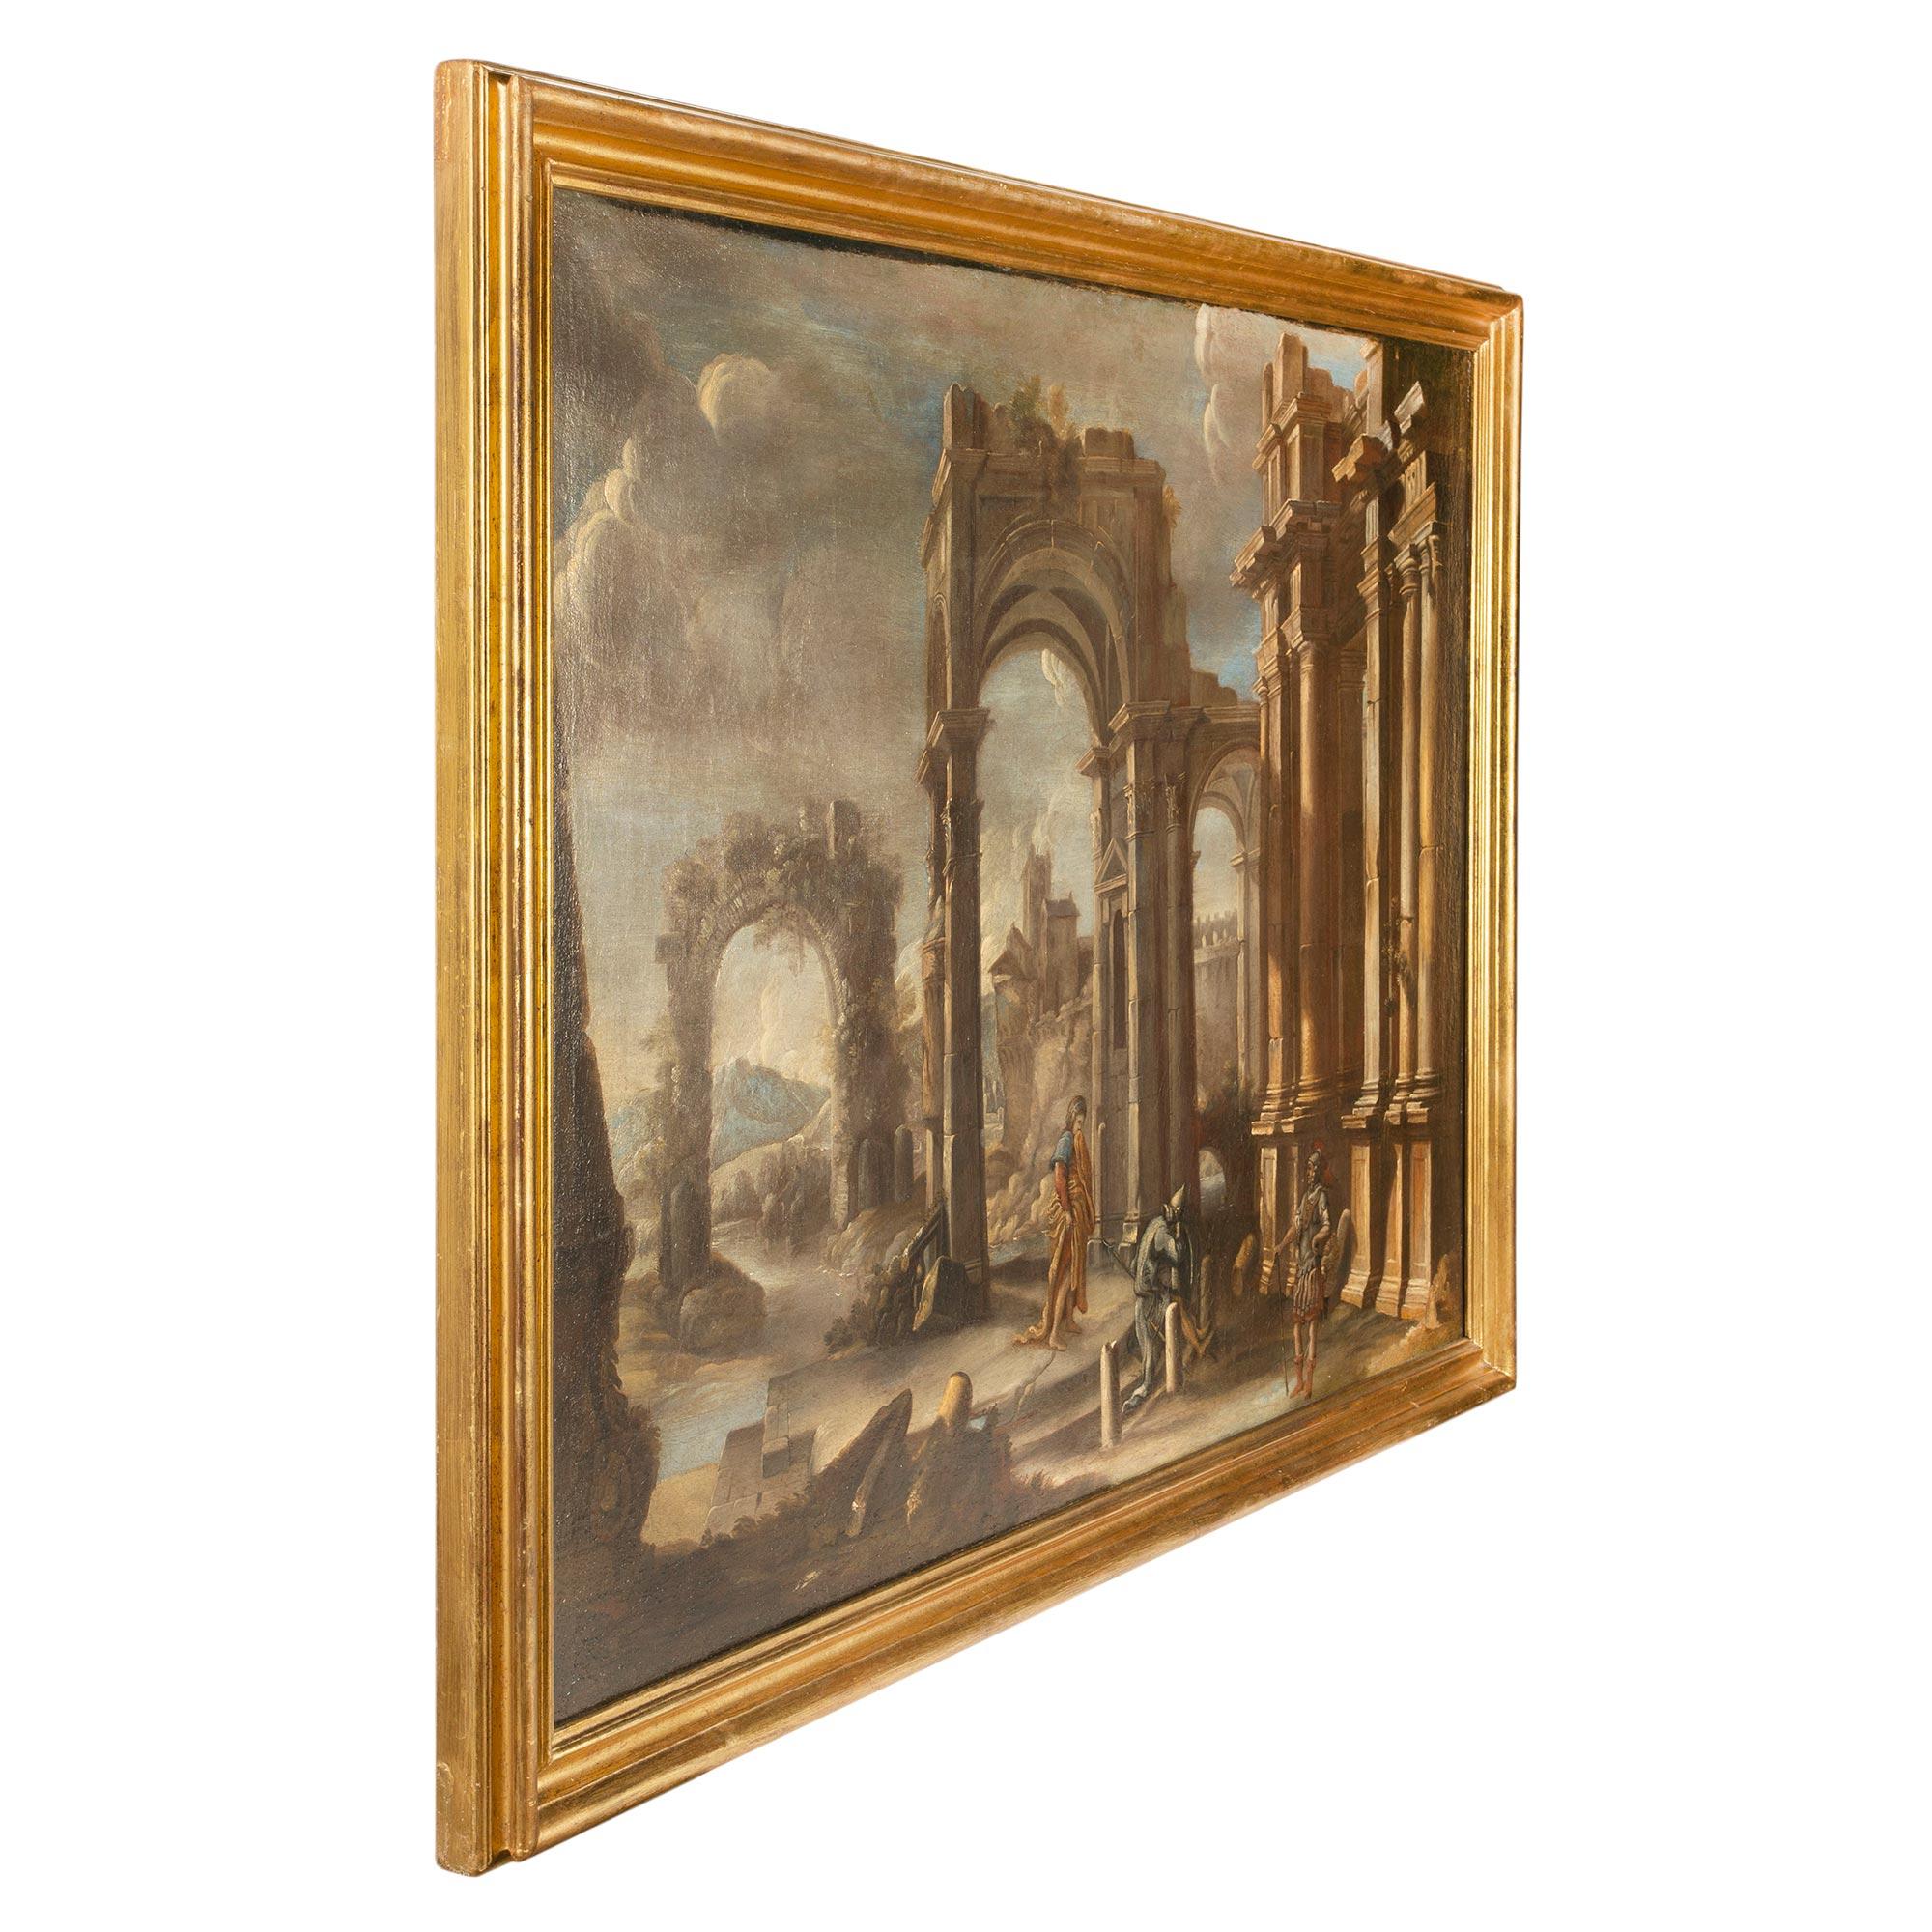 Une paire spectaculaire et extrêmement bien exécutée de peintures italiennes de ruines à l'huile sur toile du milieu du 18e siècle. Chaque tableau présente de merveilleuses perspectives, des détails architecturaux exceptionnels et des personnages